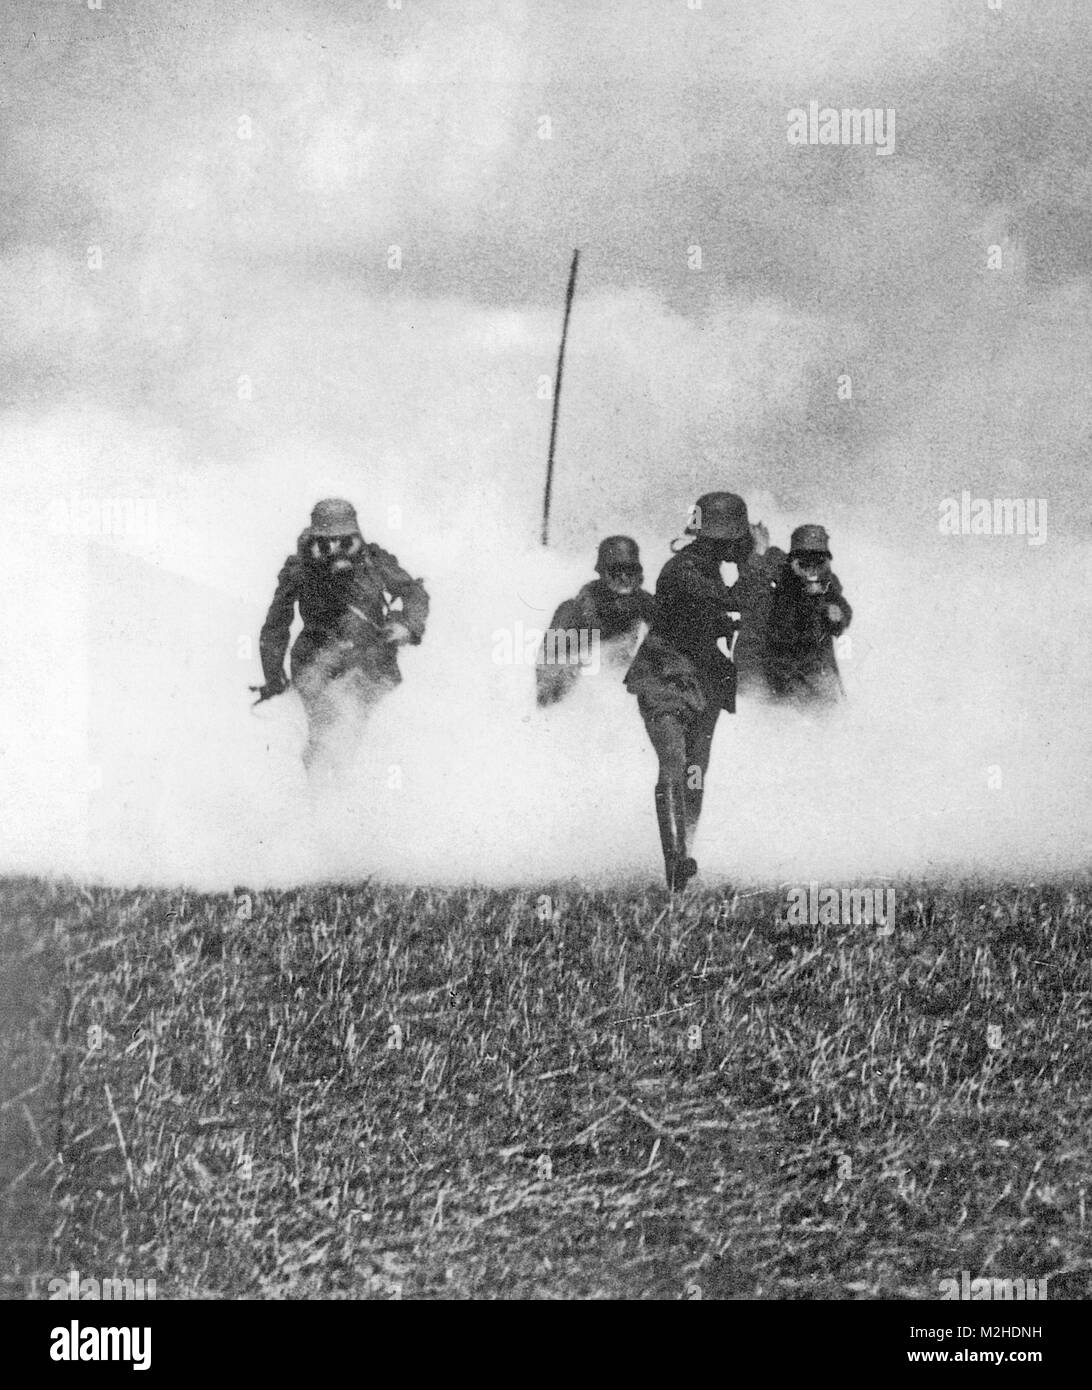 Première Guerre mondiale, les soldats allemands l'avancement de la pratique avec des masques à travers un nuage de gaz. Le pôle marque le point de départ. Banque D'Images